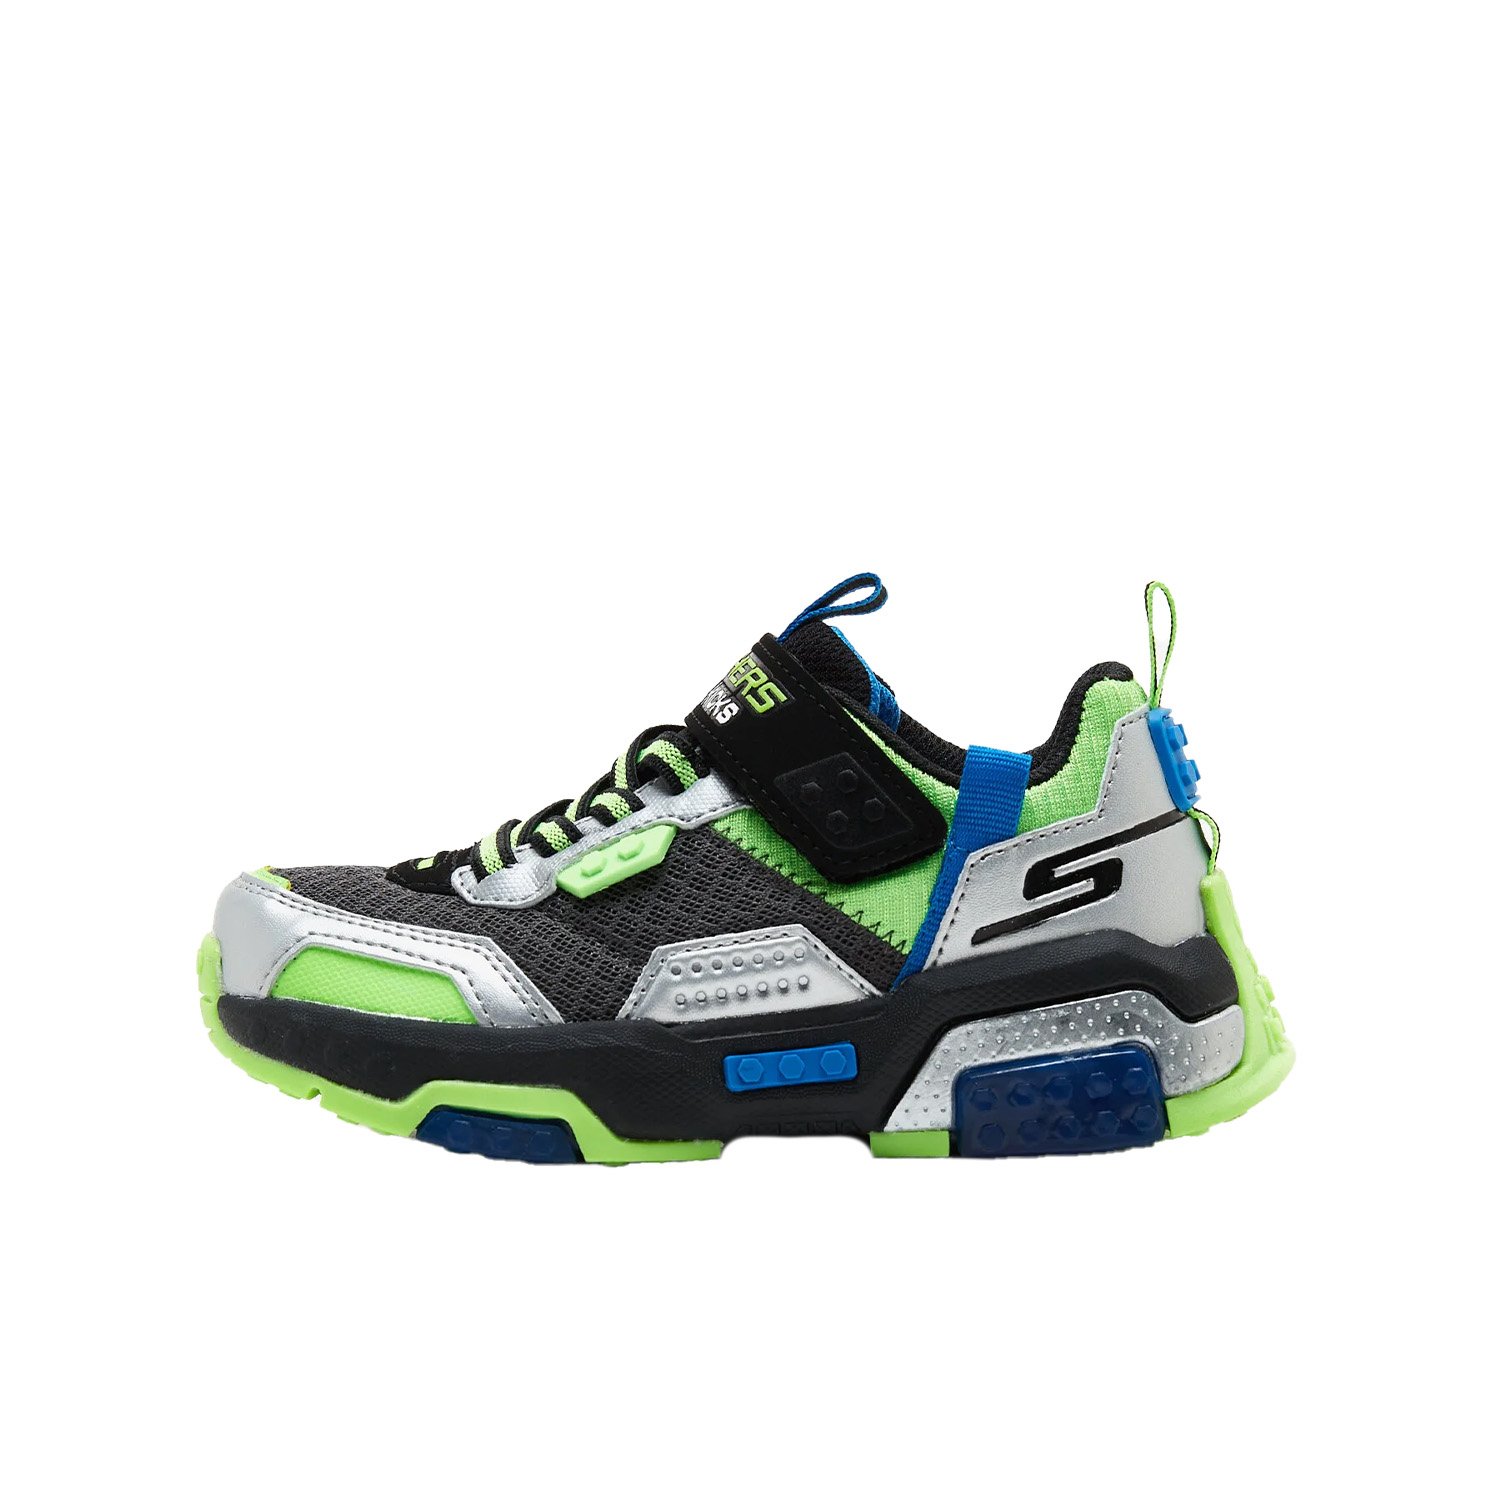 Skechers Brick Kicks 2.0 Çocuk Ayakkabısı - Renkli - 1